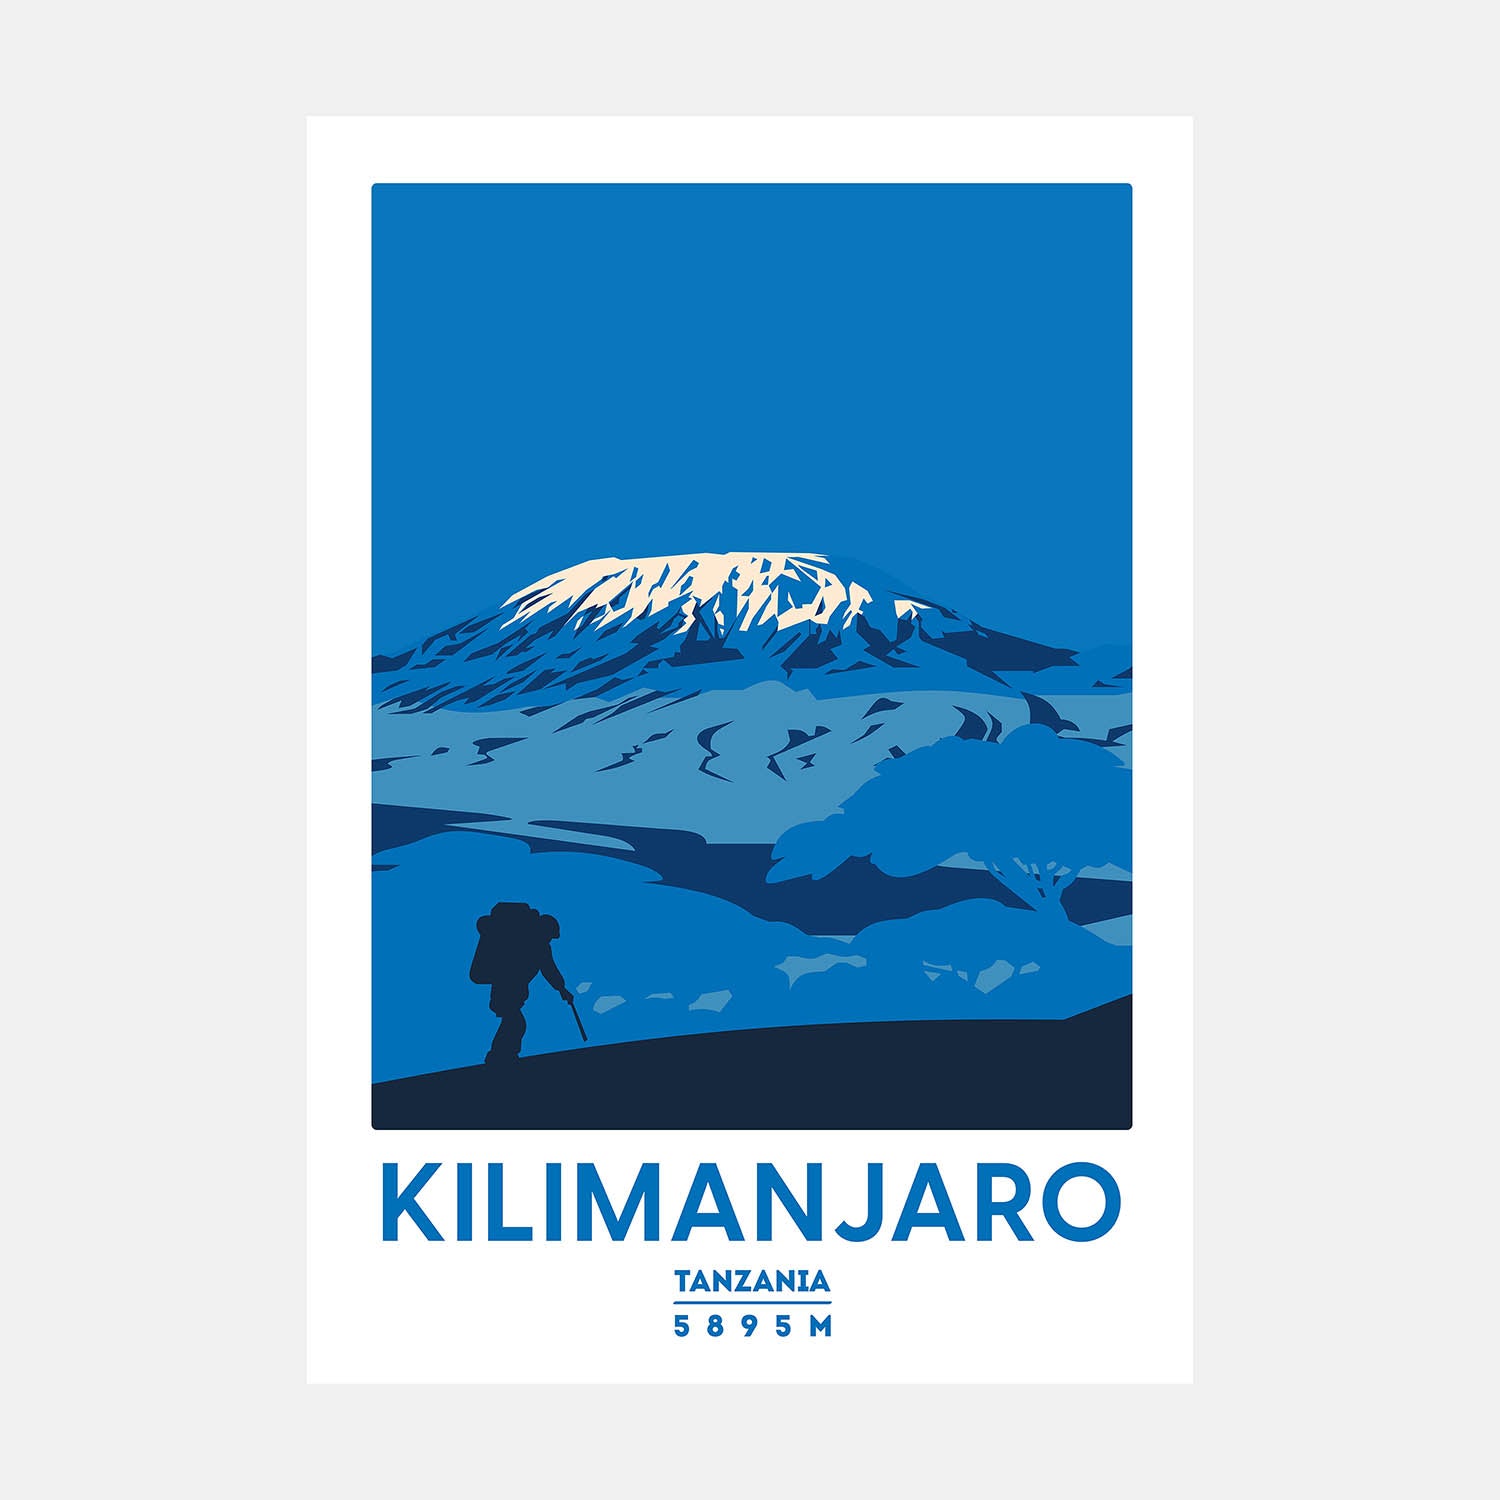 Kilimanjaro mountain art print